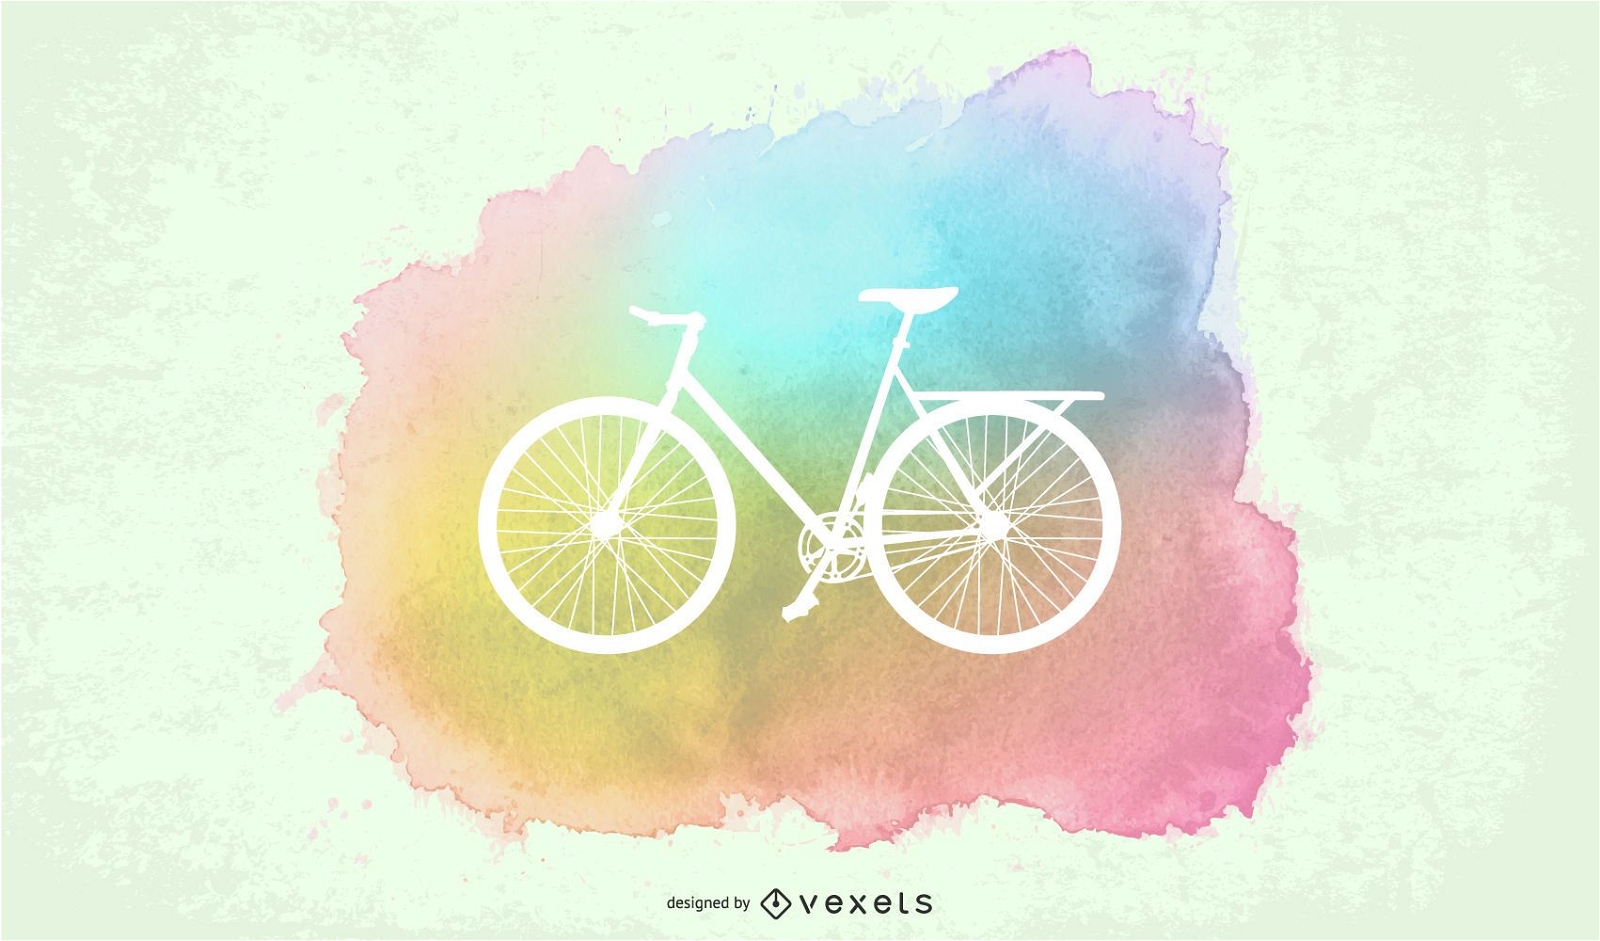 P?ster pintado para passeio de bicicleta